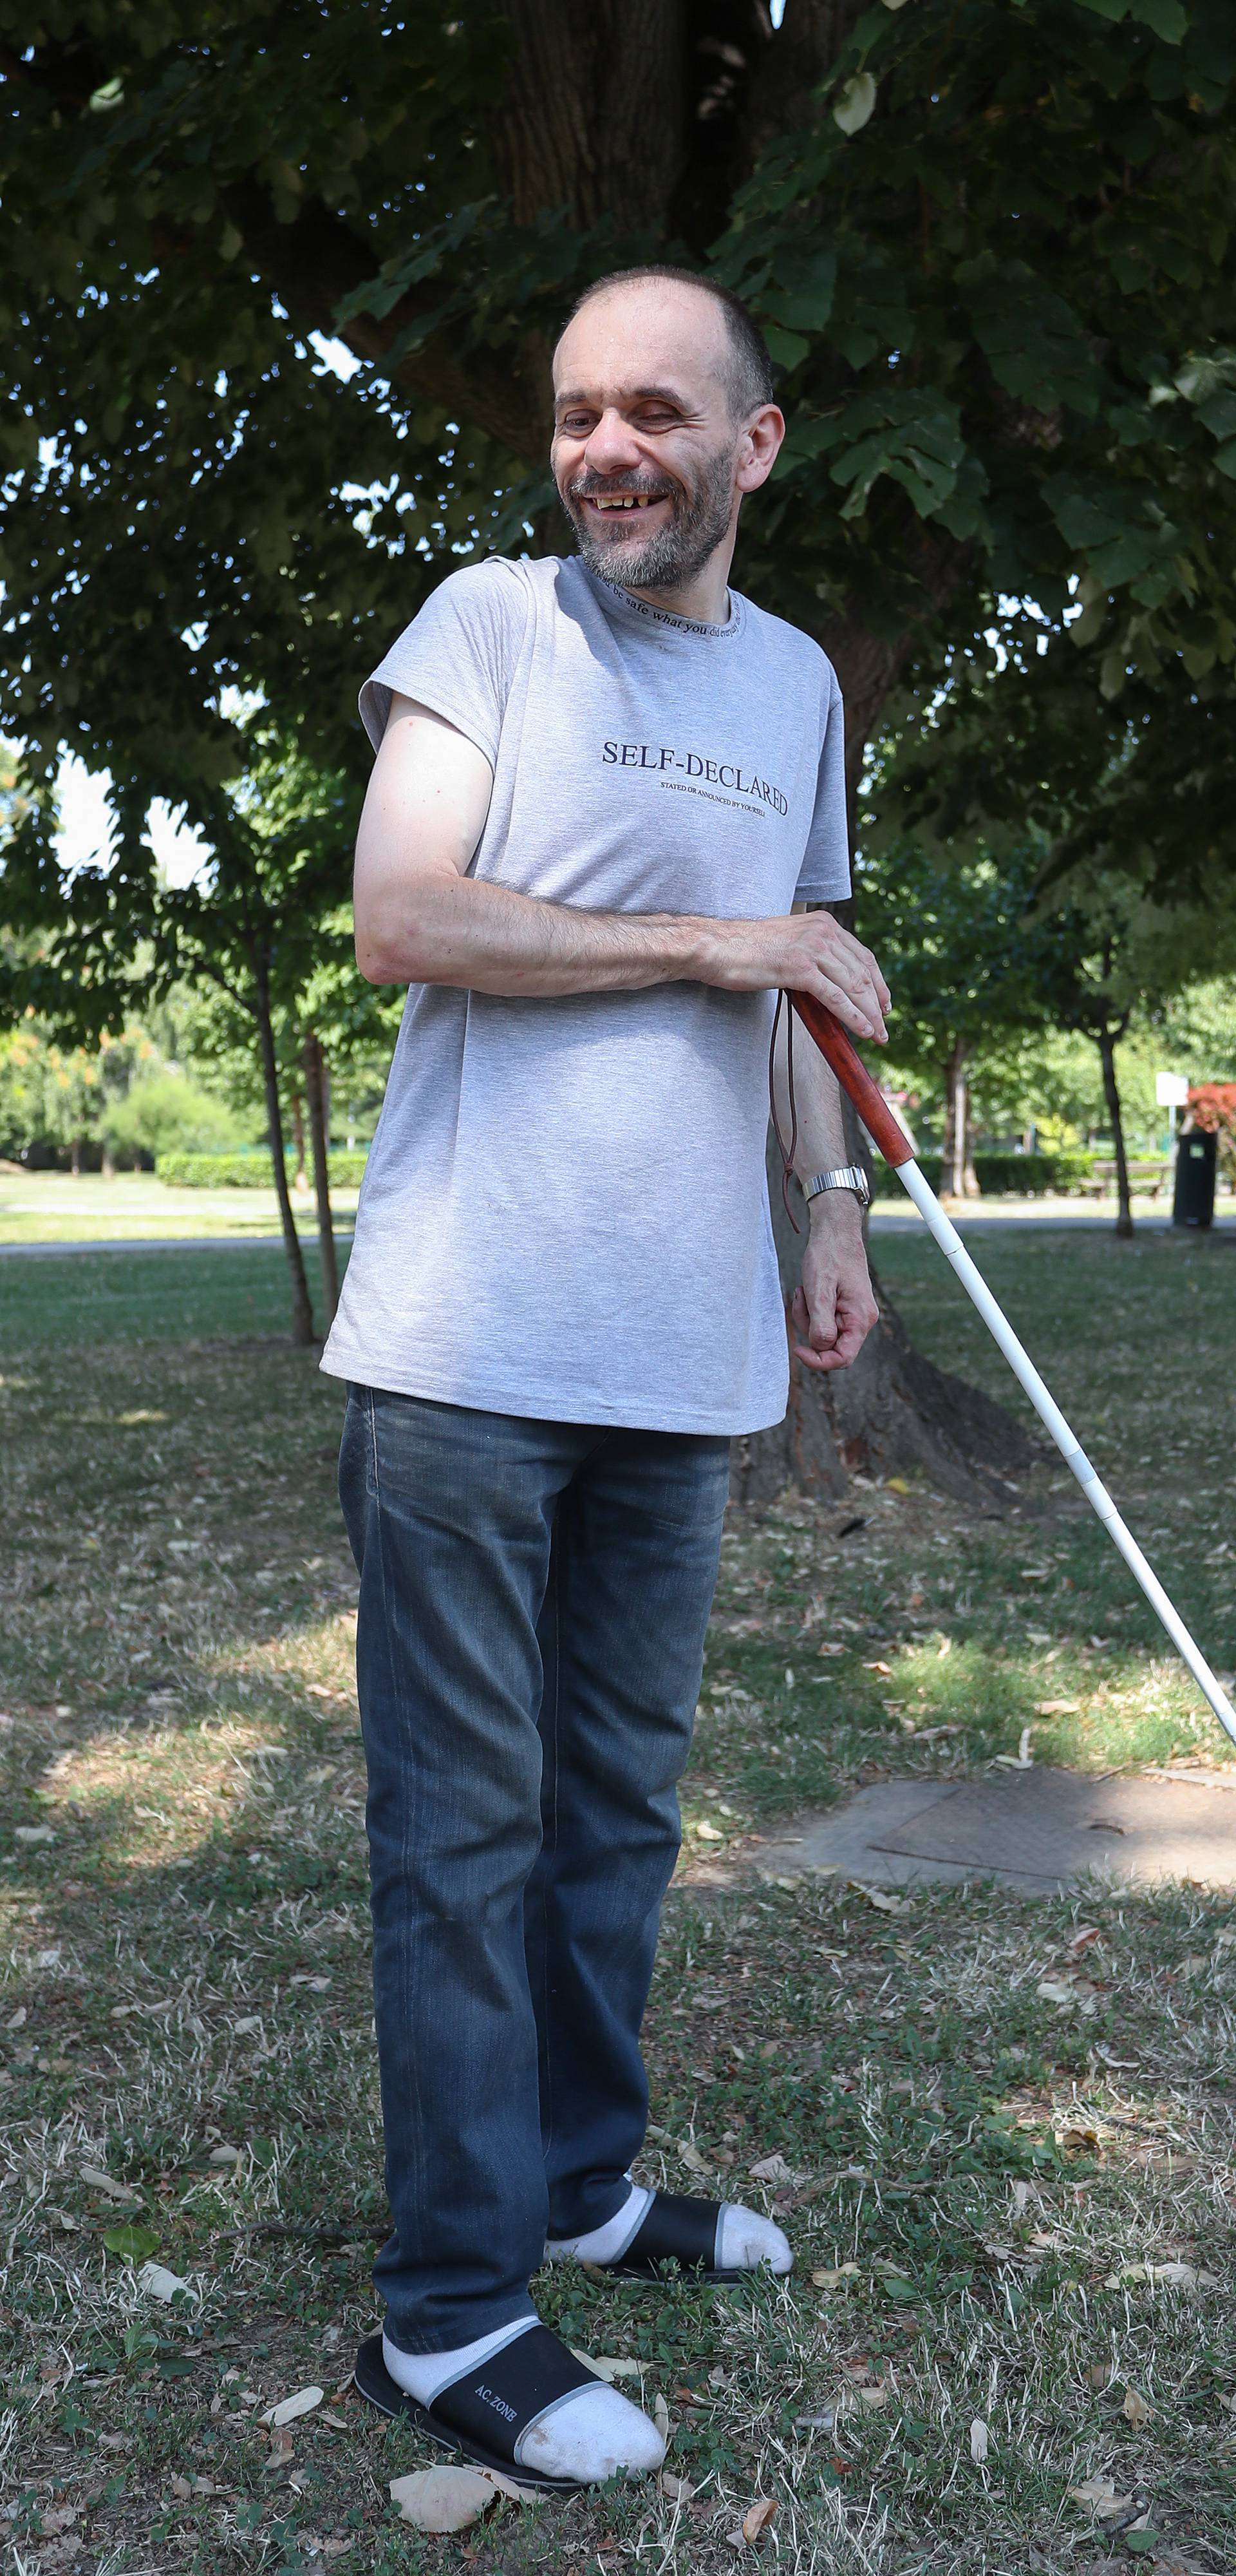 Zagreb: Policija slijepca zamijenila za nasilnika, priveli ga te mu pritom slomili nogu